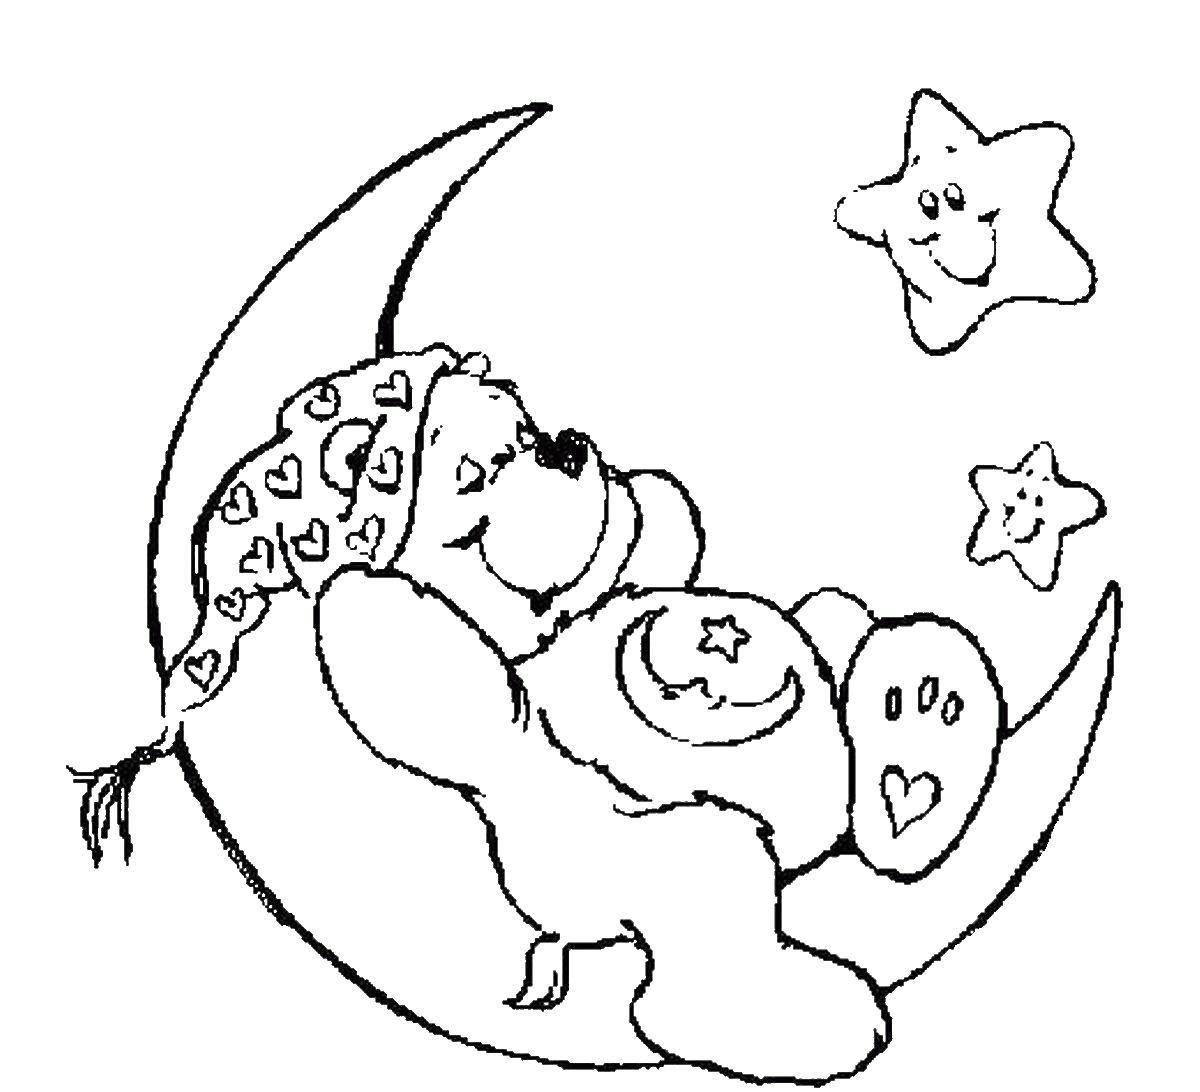 Иллюстрация к колыбельной песне. Луна раскраска. Раскраска Медвежонок на Луне. Сон раскраска. Колыбельная раскраска для детей.